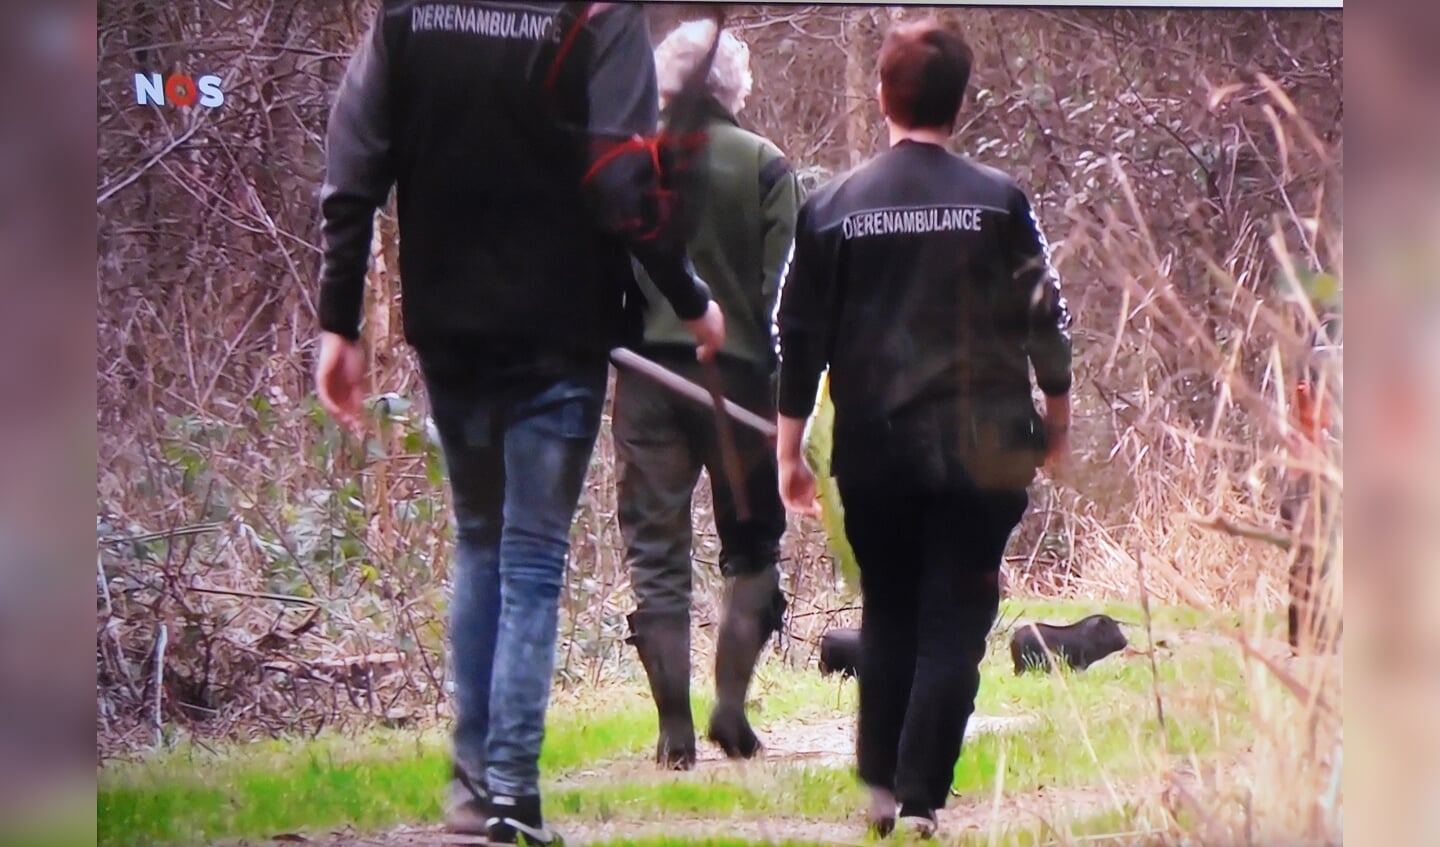 De boswachter en medewerkers van de dierenambulance proberen de hangbuikzwijntjes te vangen